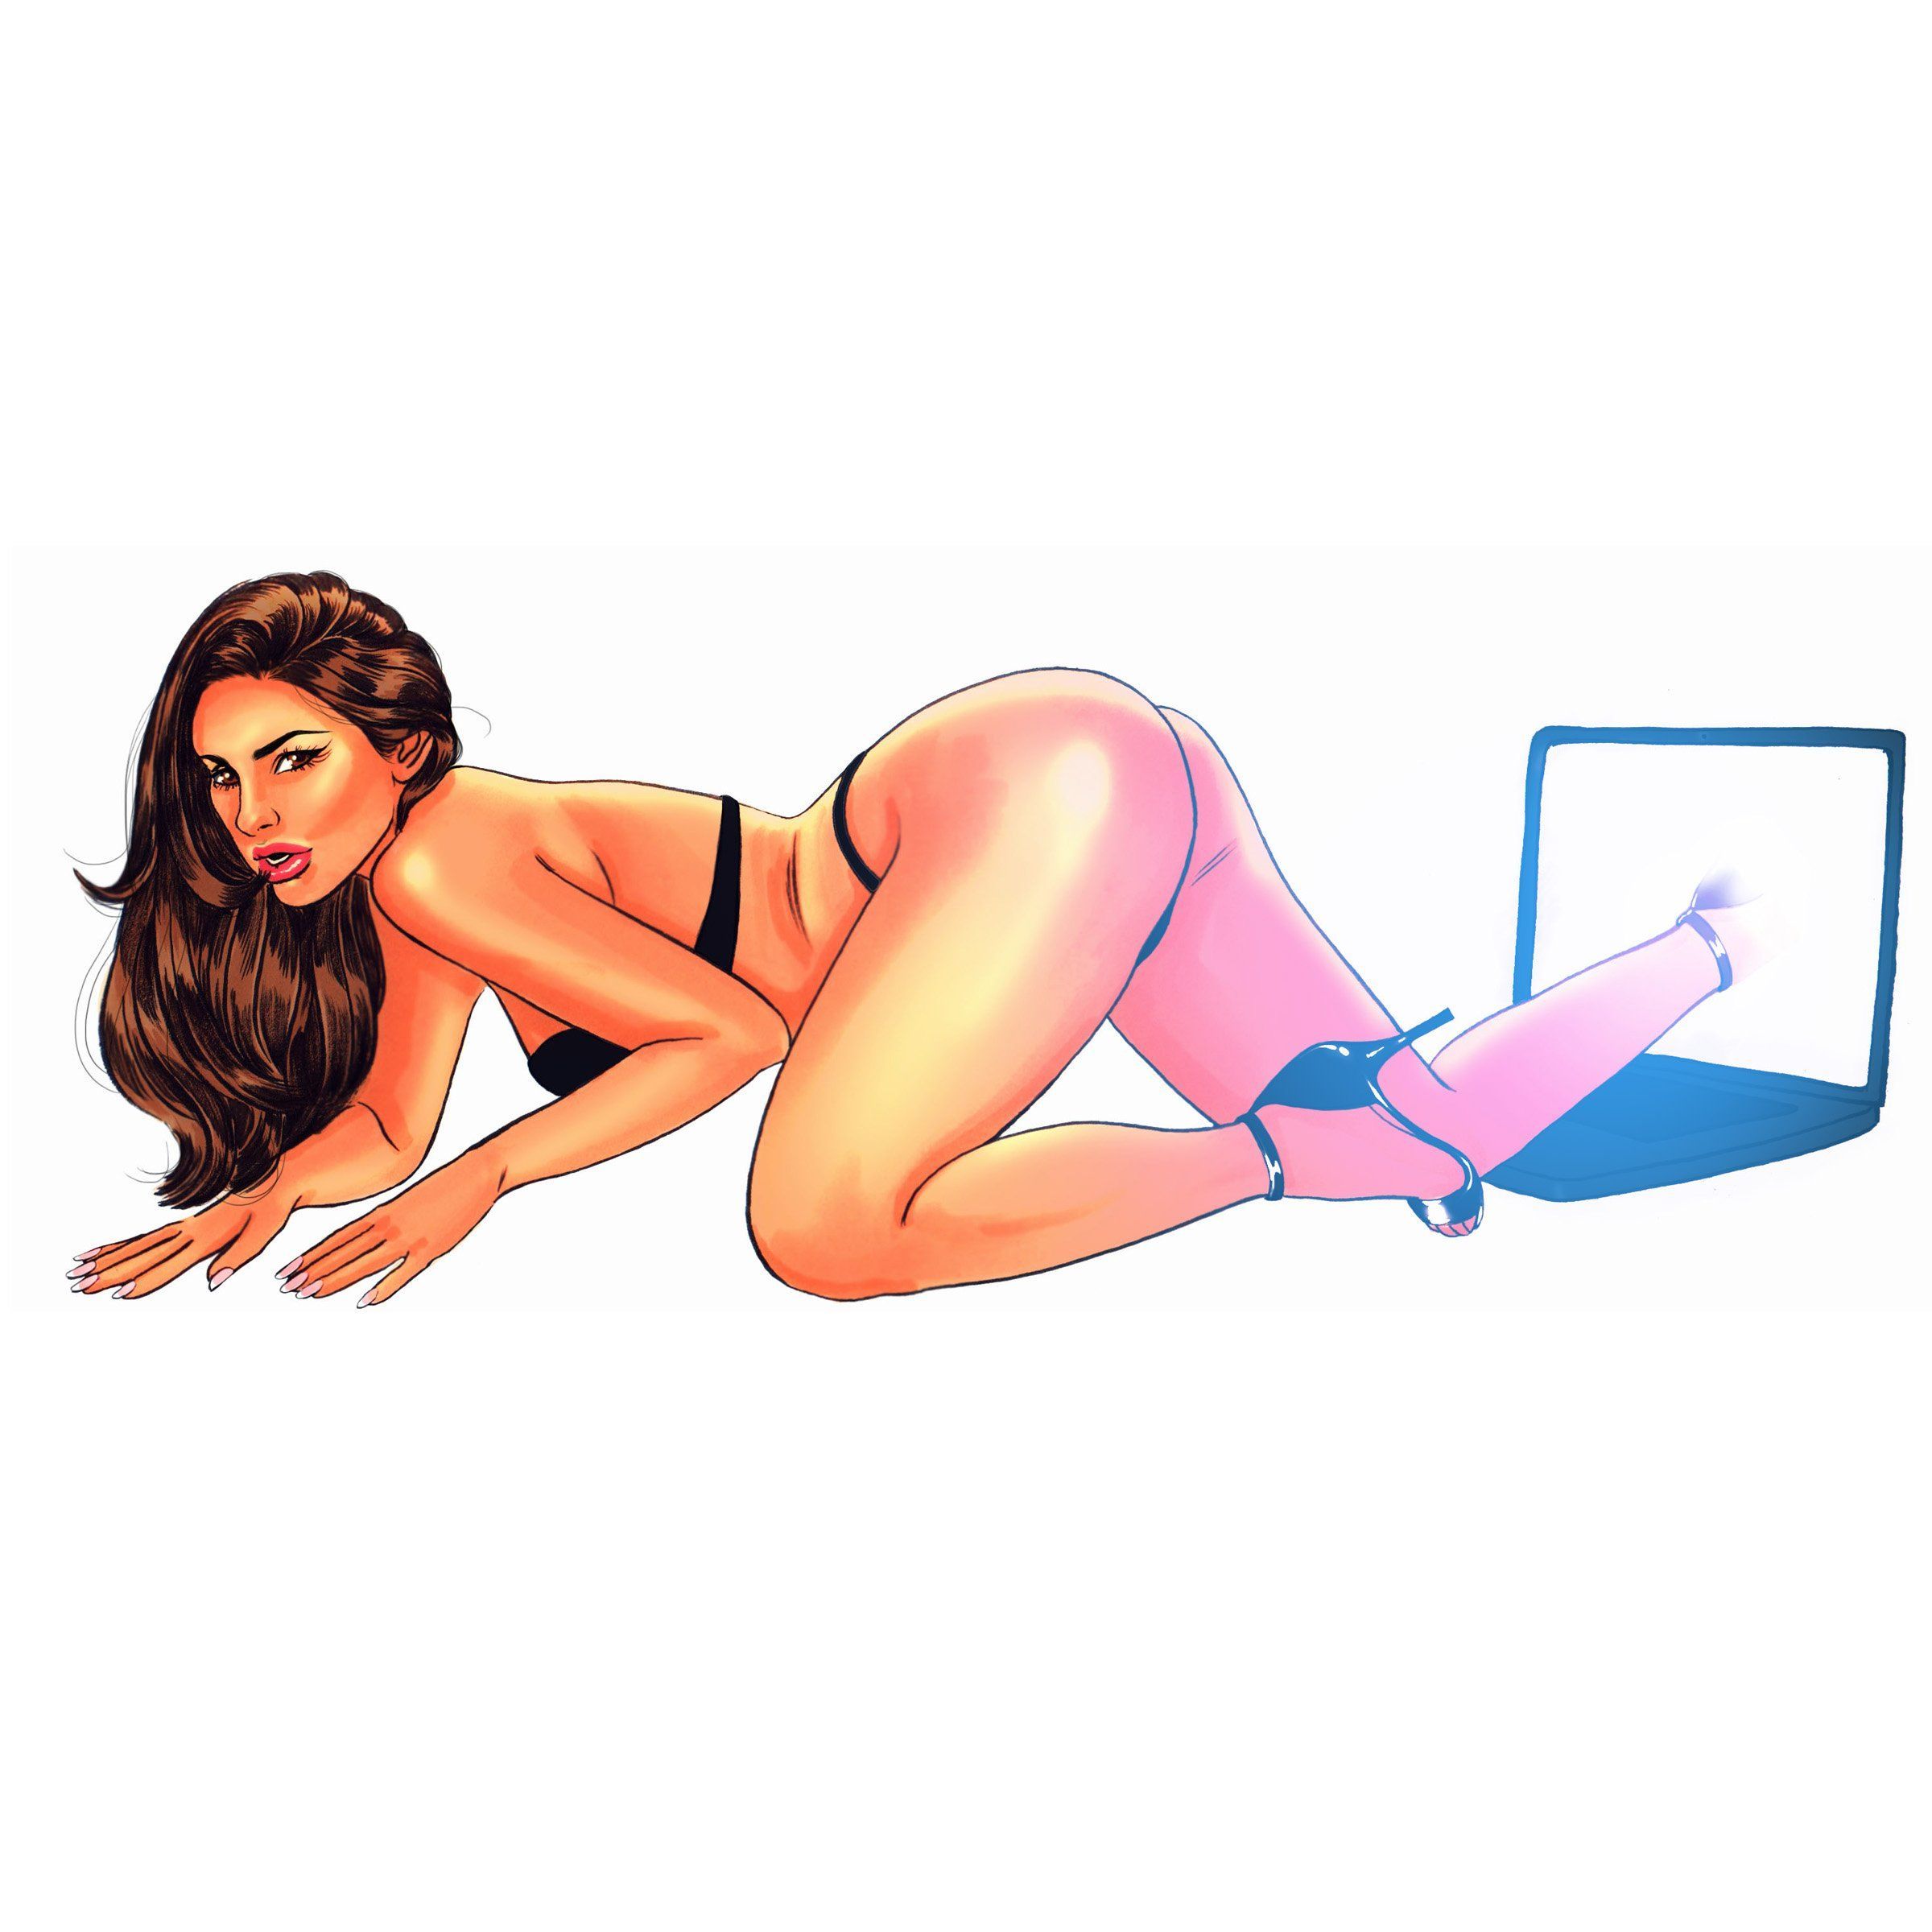 Stripper Girl Hd Vide0 Online